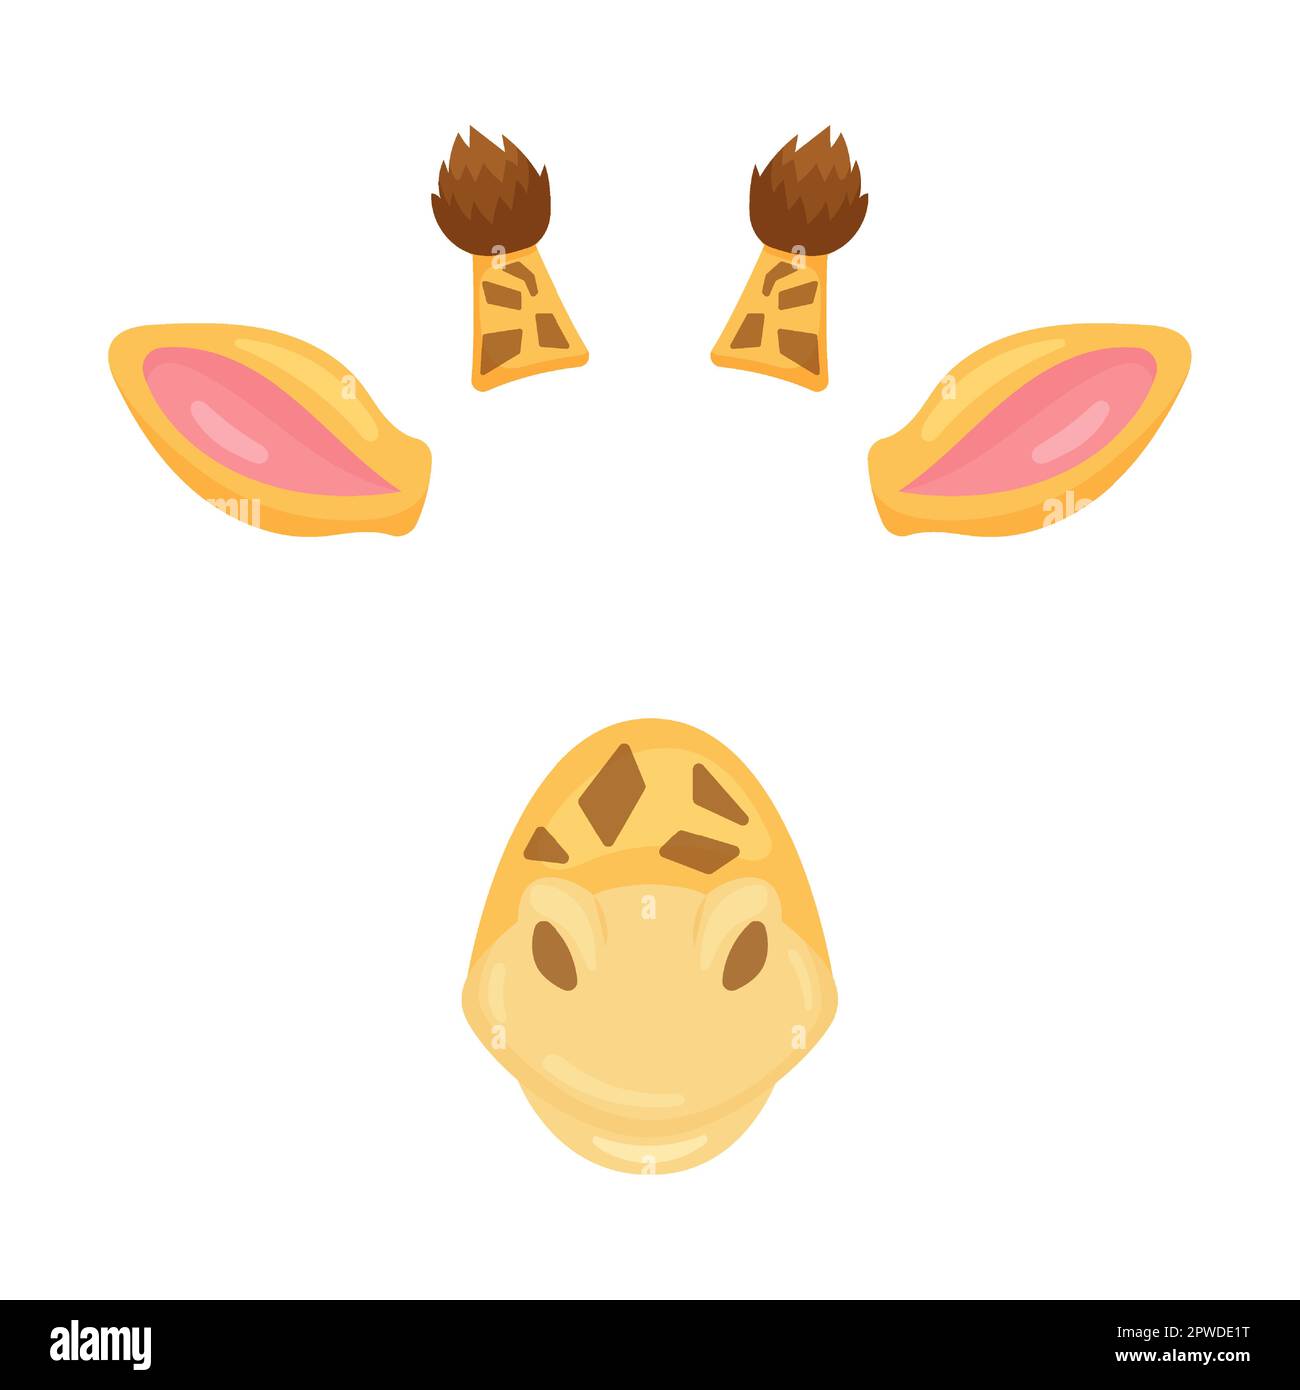 Masque de visage animal de girafe rouge pour vidéo et photo ensemble. Illustration vectorielle de filtres selfie avec oreilles et nez. Bande dessinée drôle de museau isolé Illustration de Vecteur